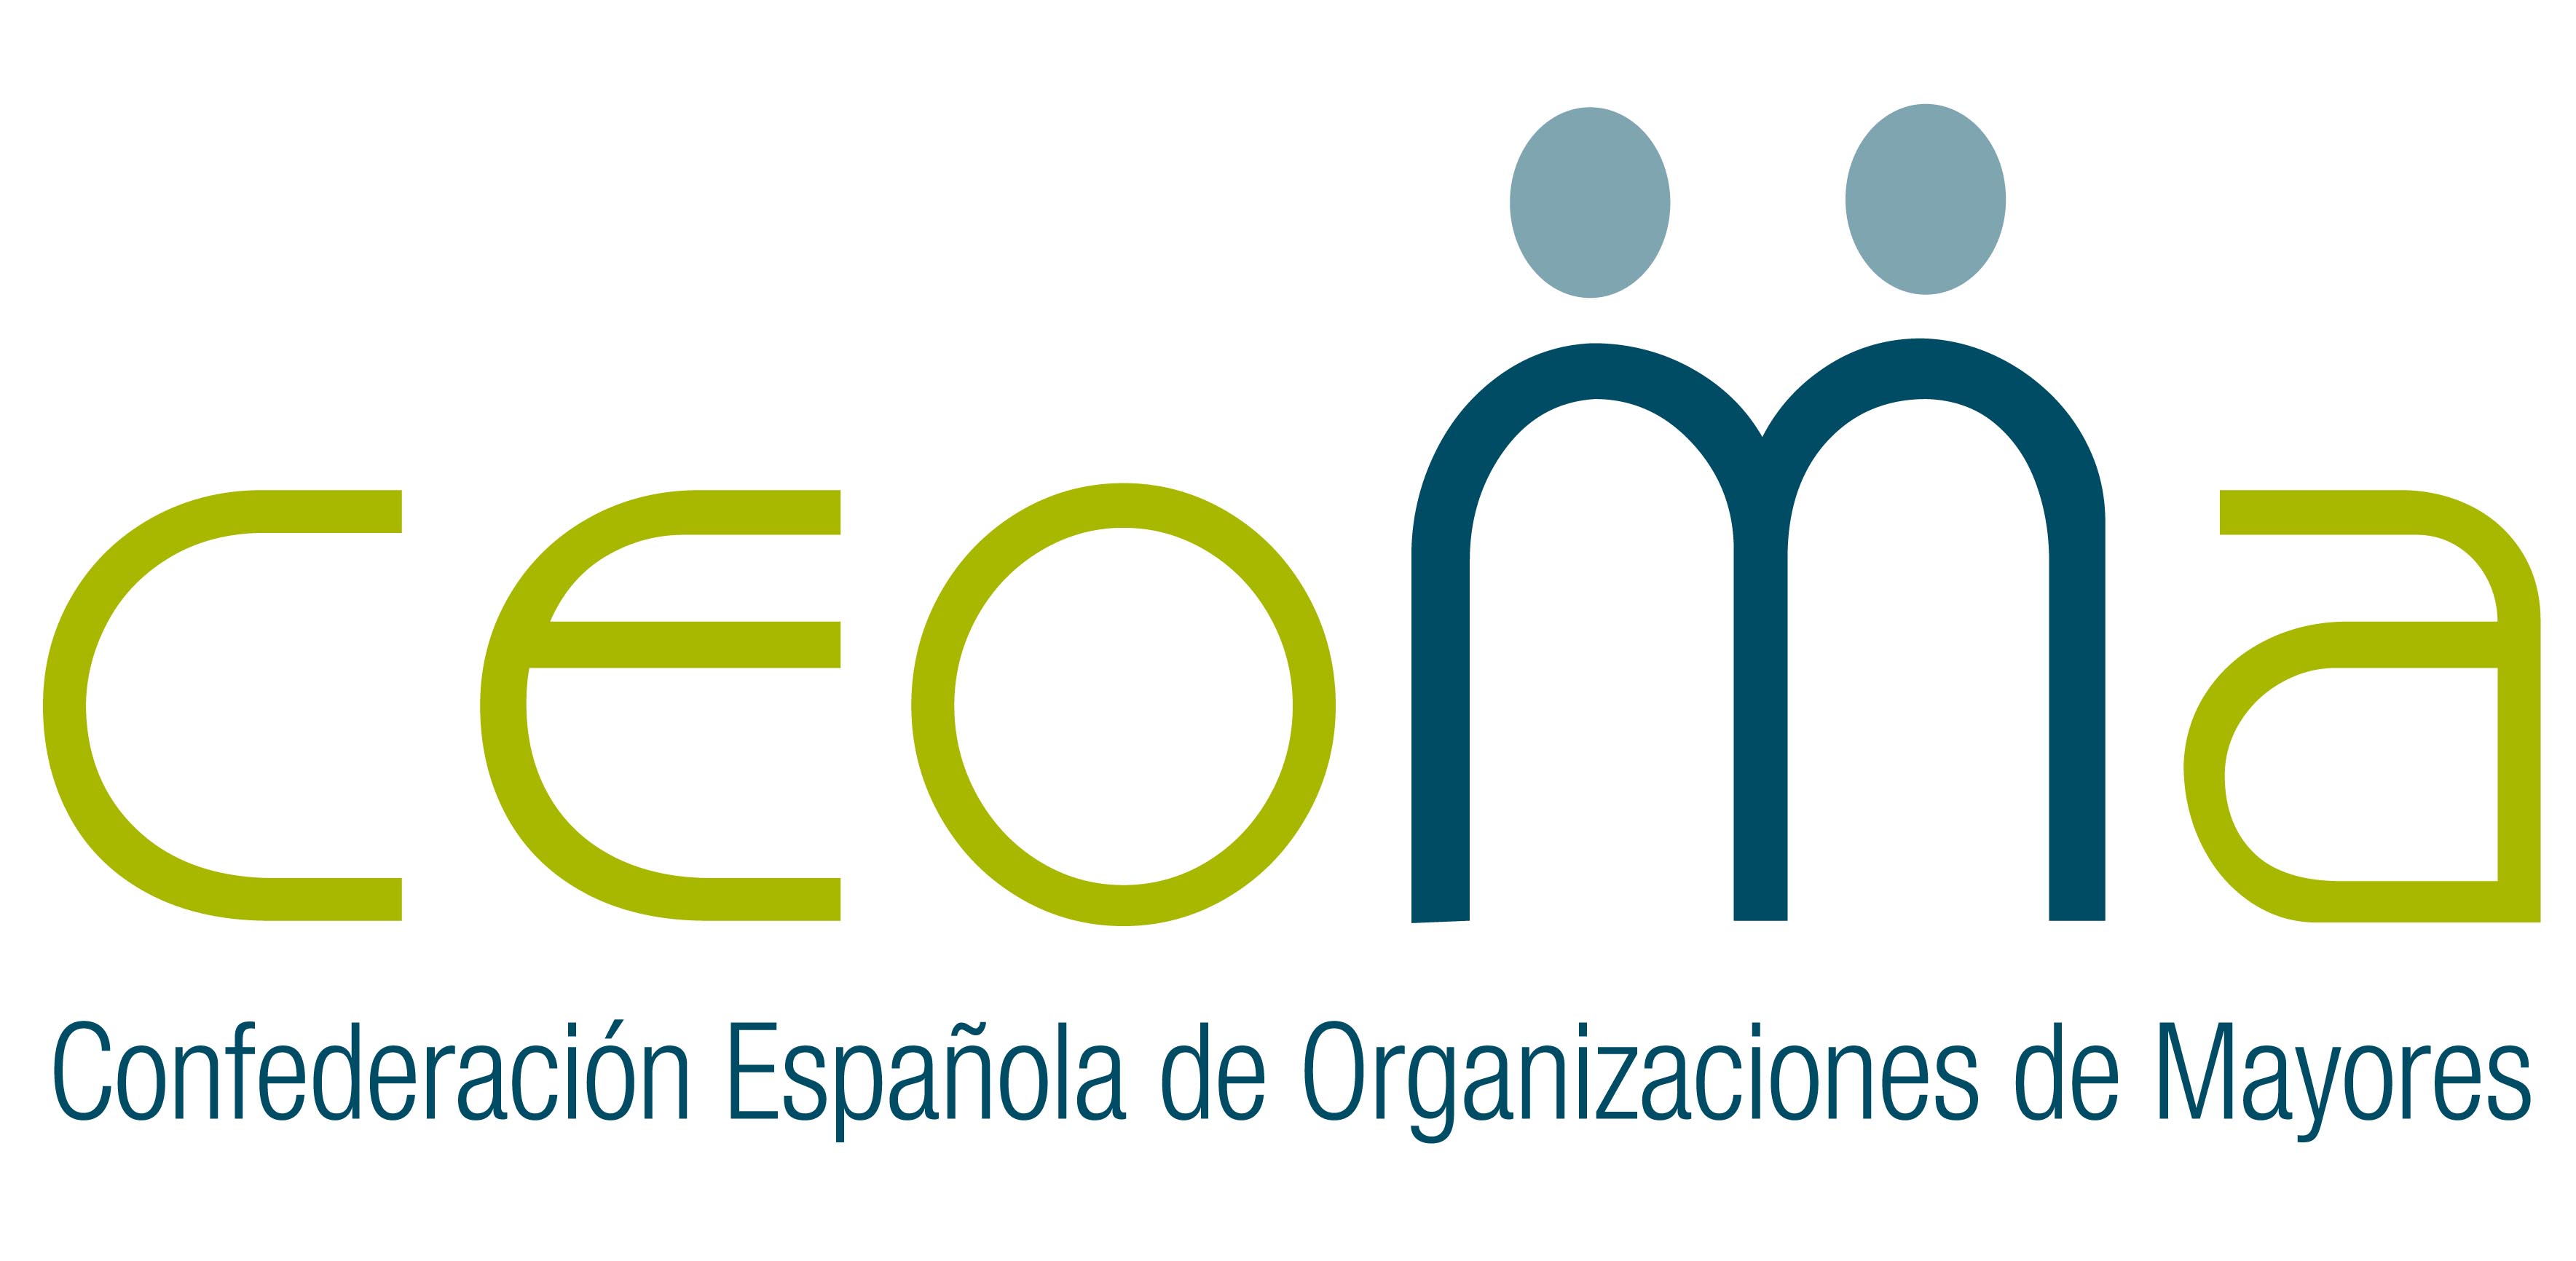 Logotipo La Confederación Española de Organizaciones de Mayores